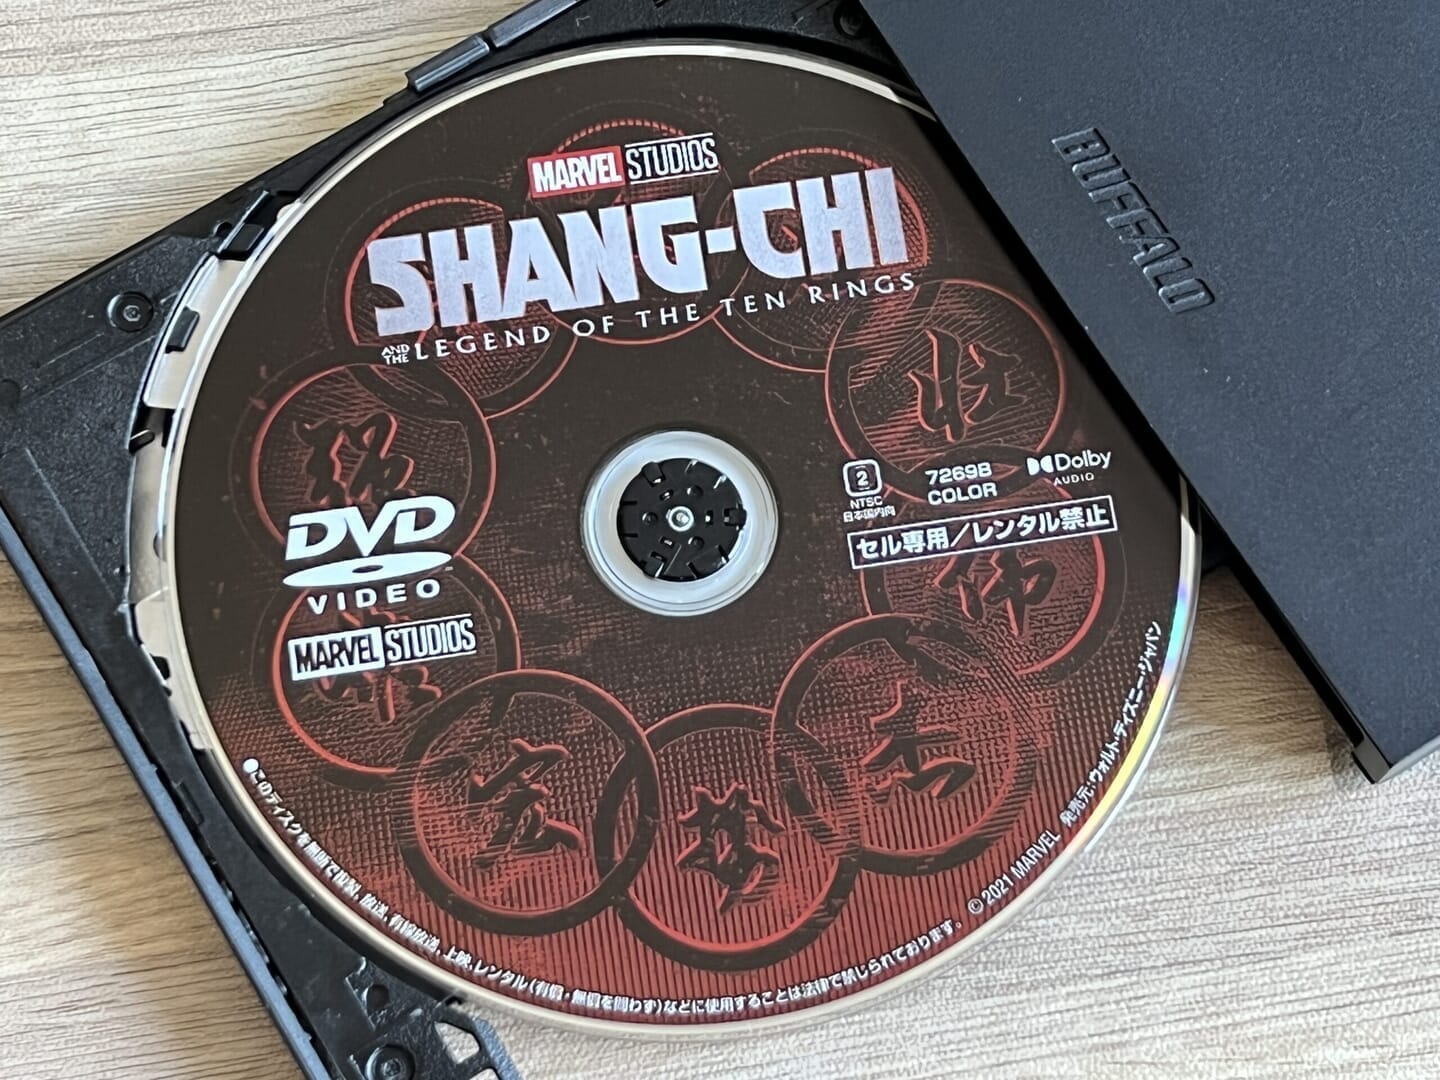 DVDコピー性能を検証：ディズニー作品『シャン・チー/テン・リングスの伝説』をISO形式で丸ごとコピーできました。